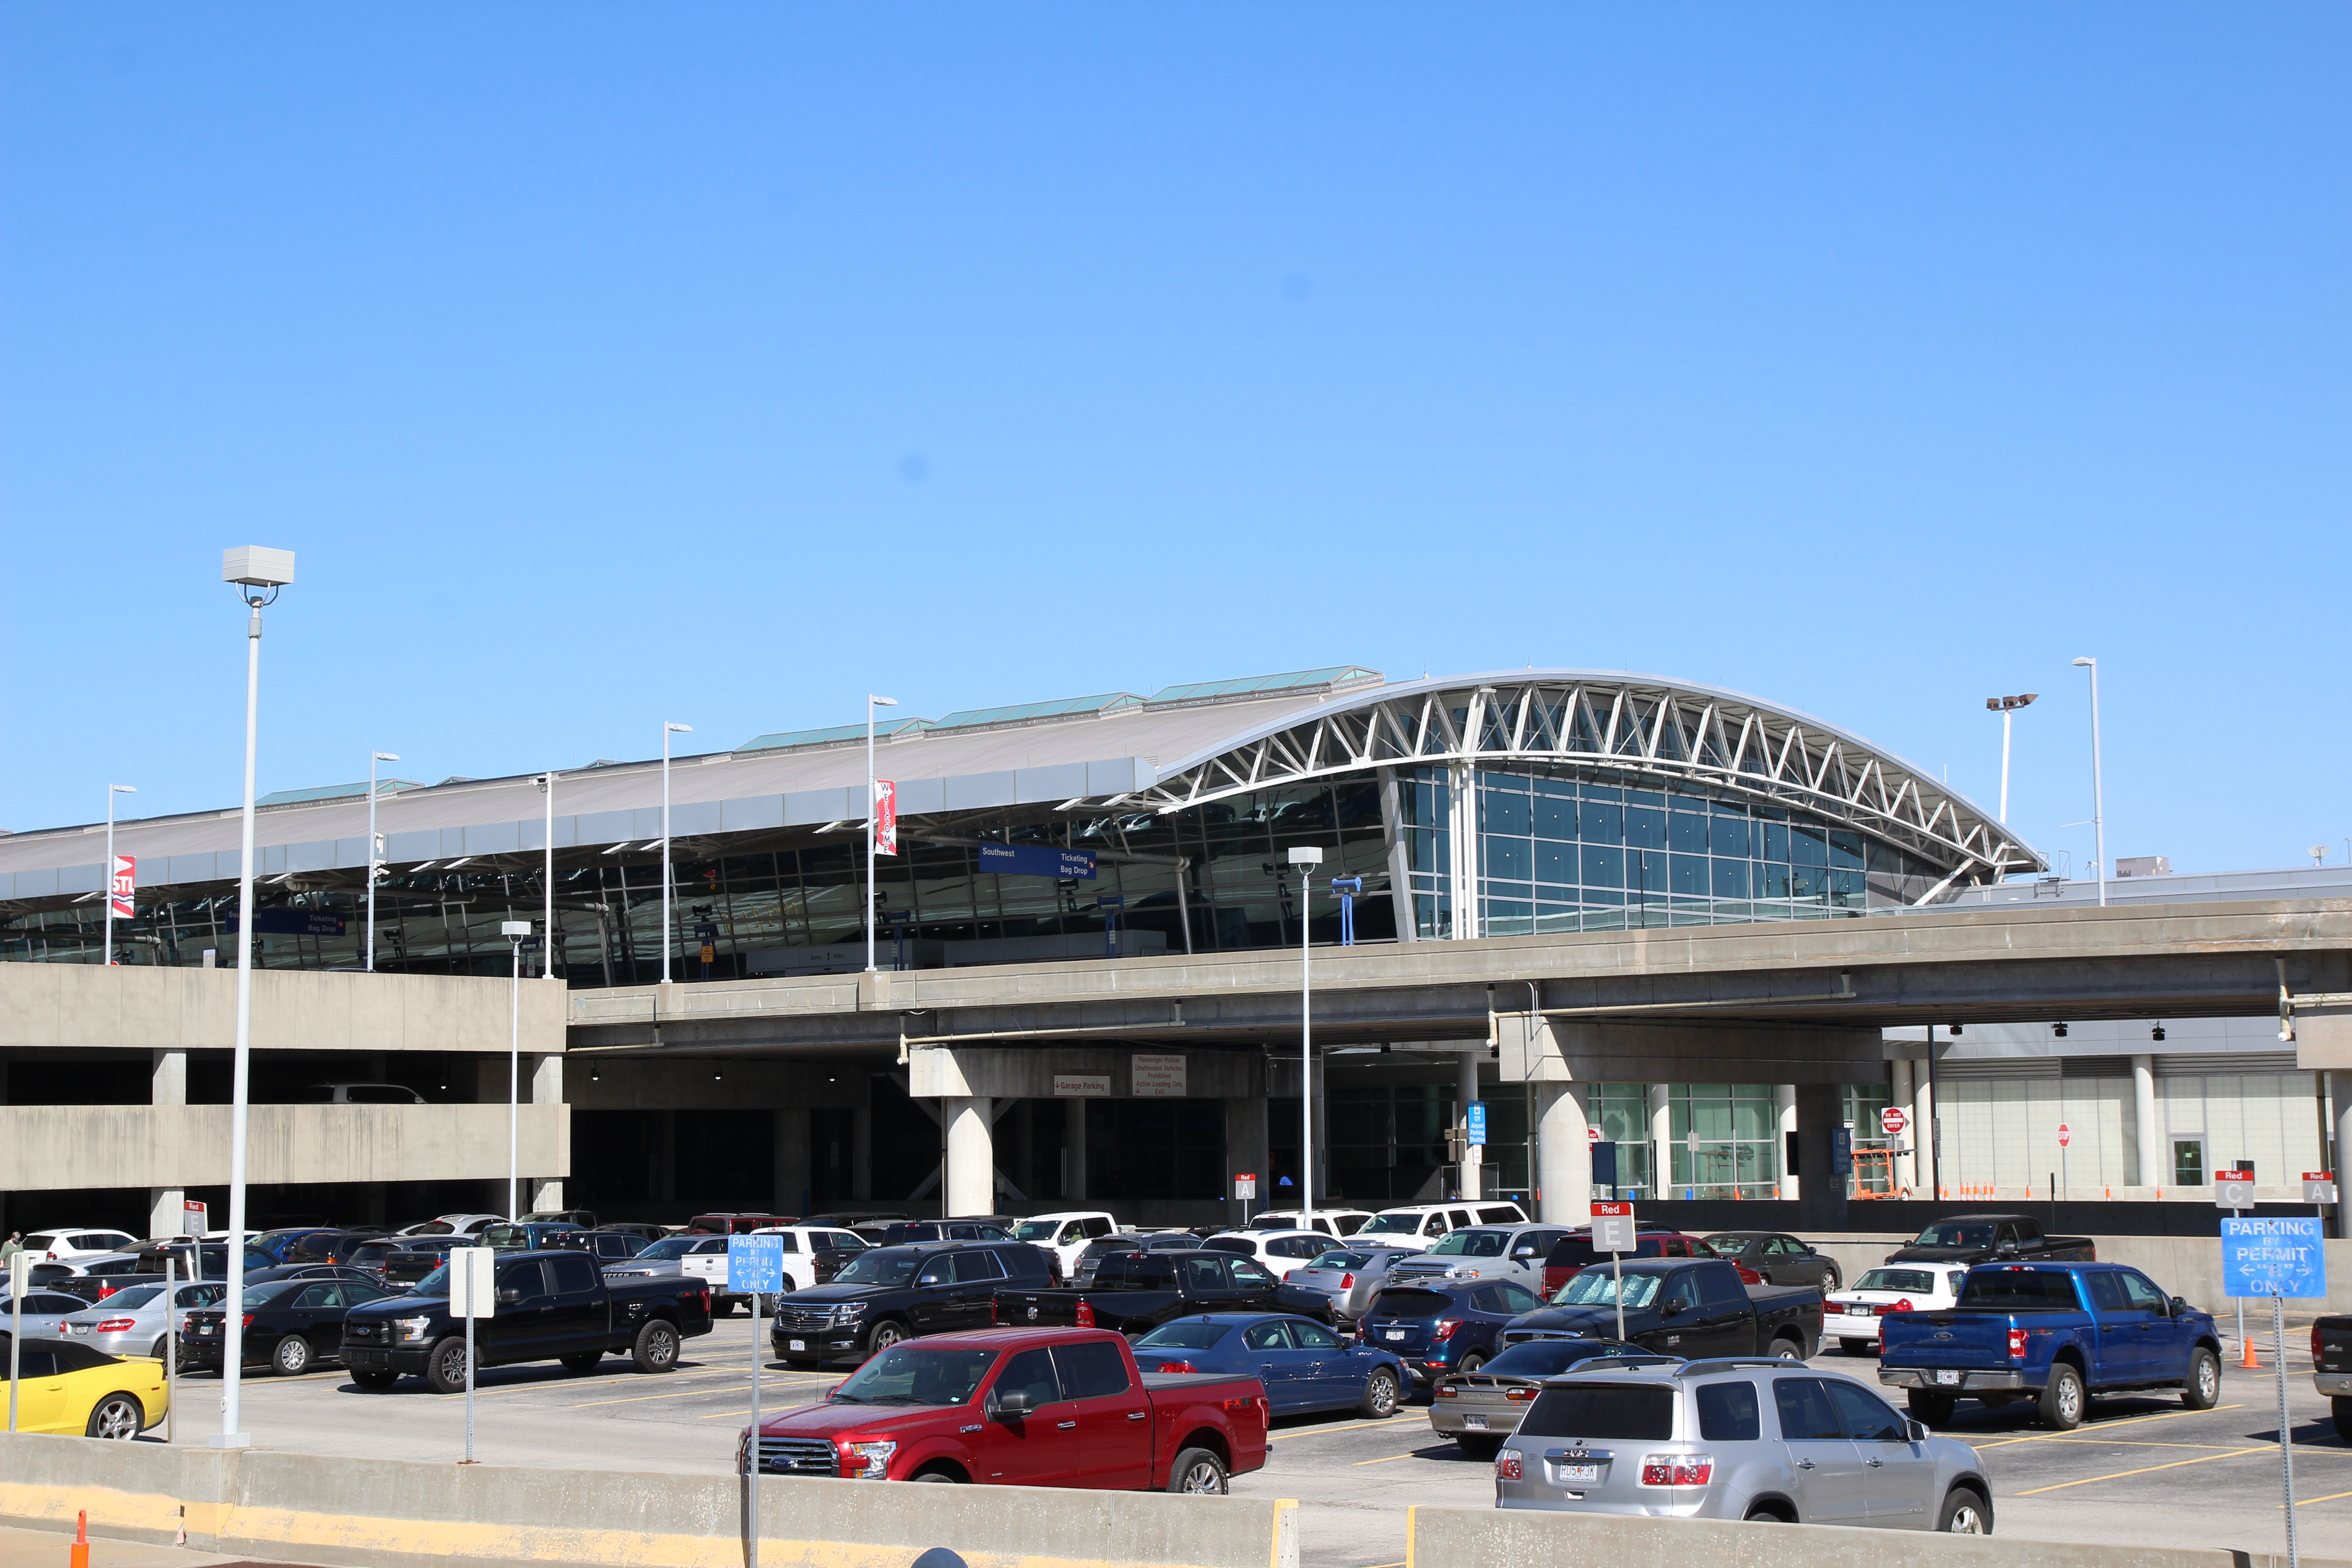 St Louis Lambert International Airport, Cancun International Airport